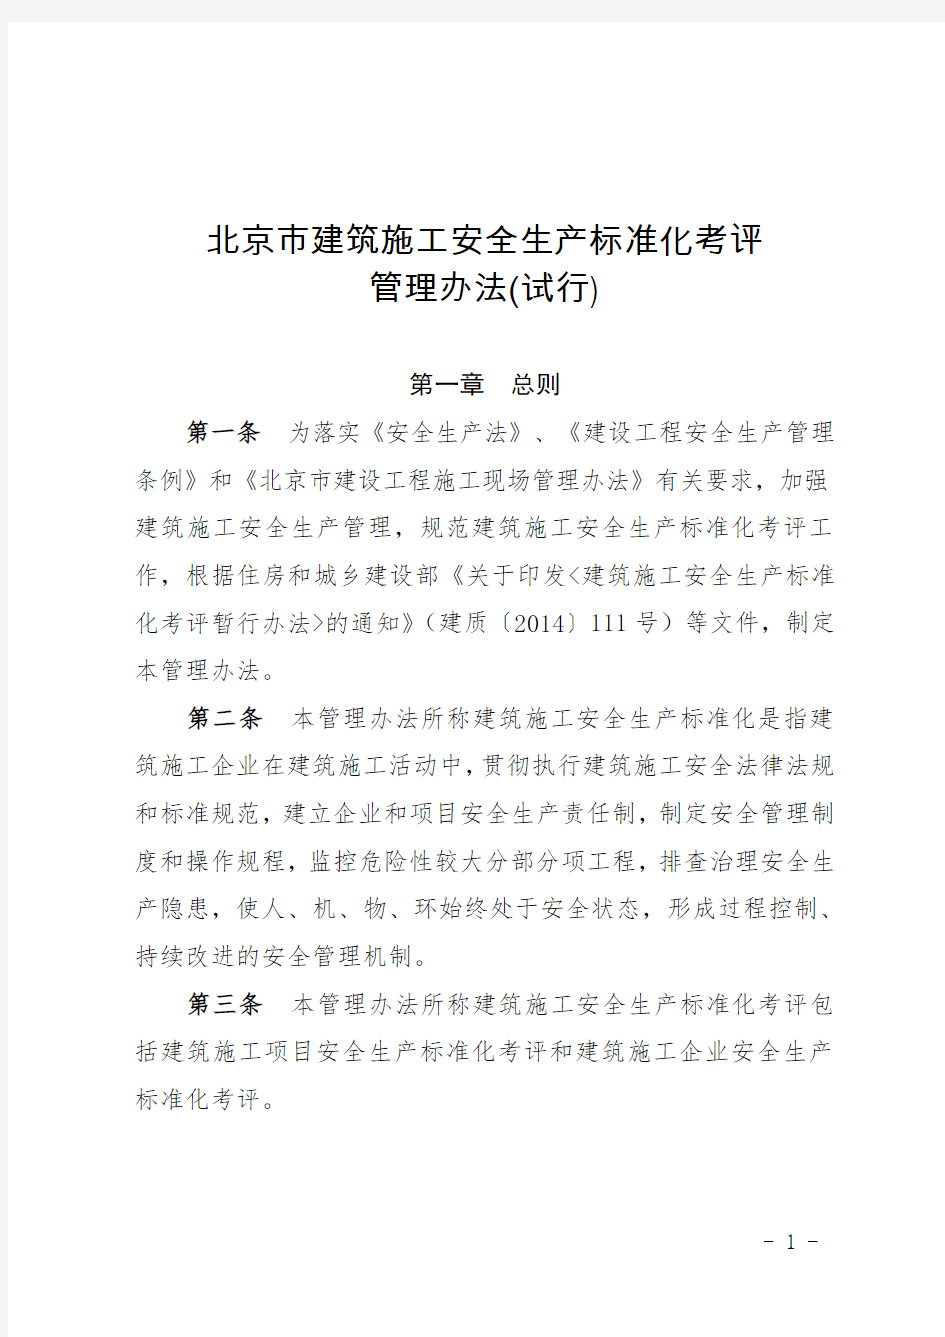 京建法〔2015〕15号附件北京市建筑施工安全生产标准化考评管理办法